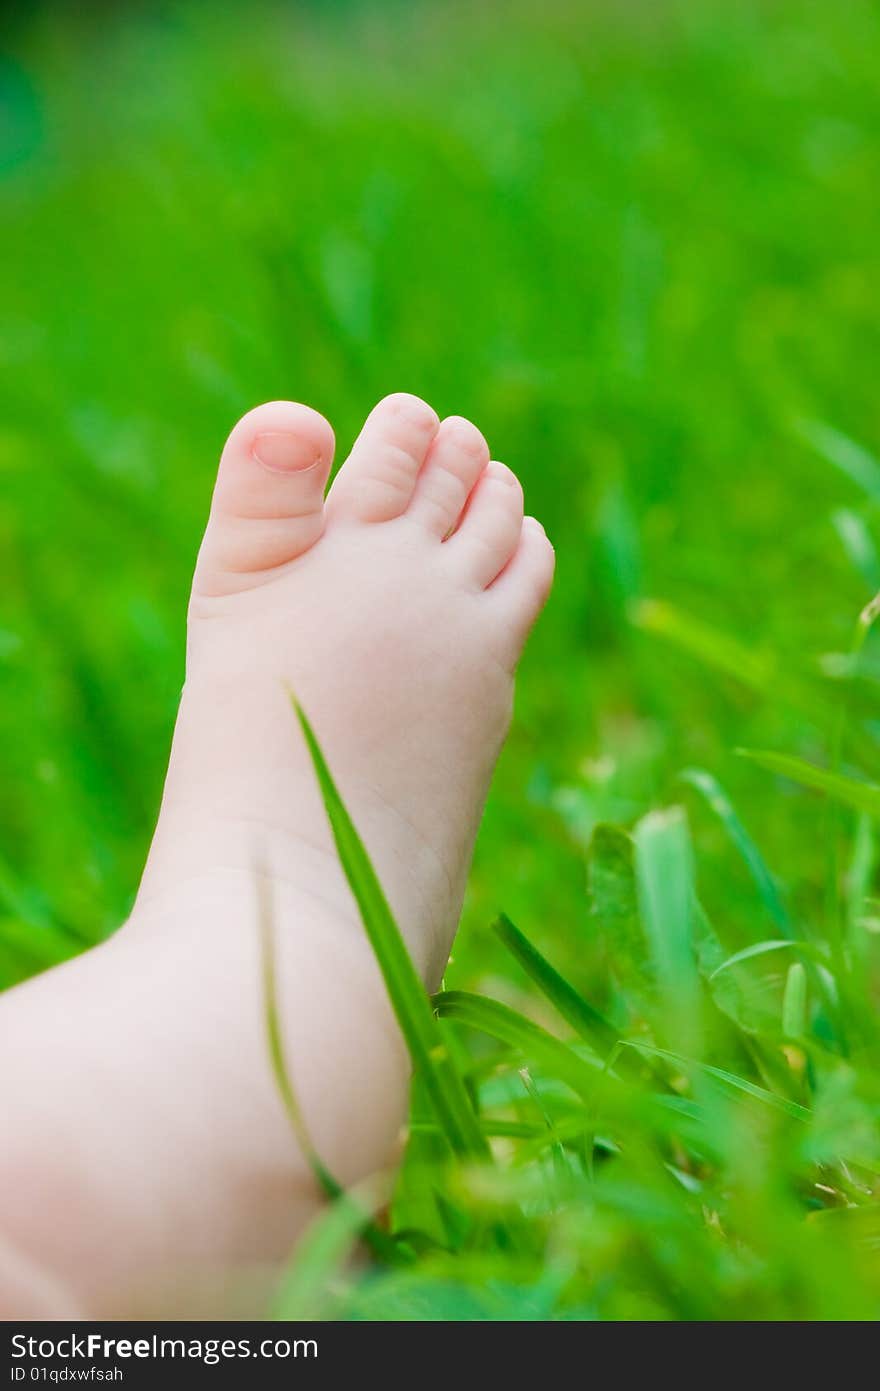 Little baby feet on fresh green grass outdoors